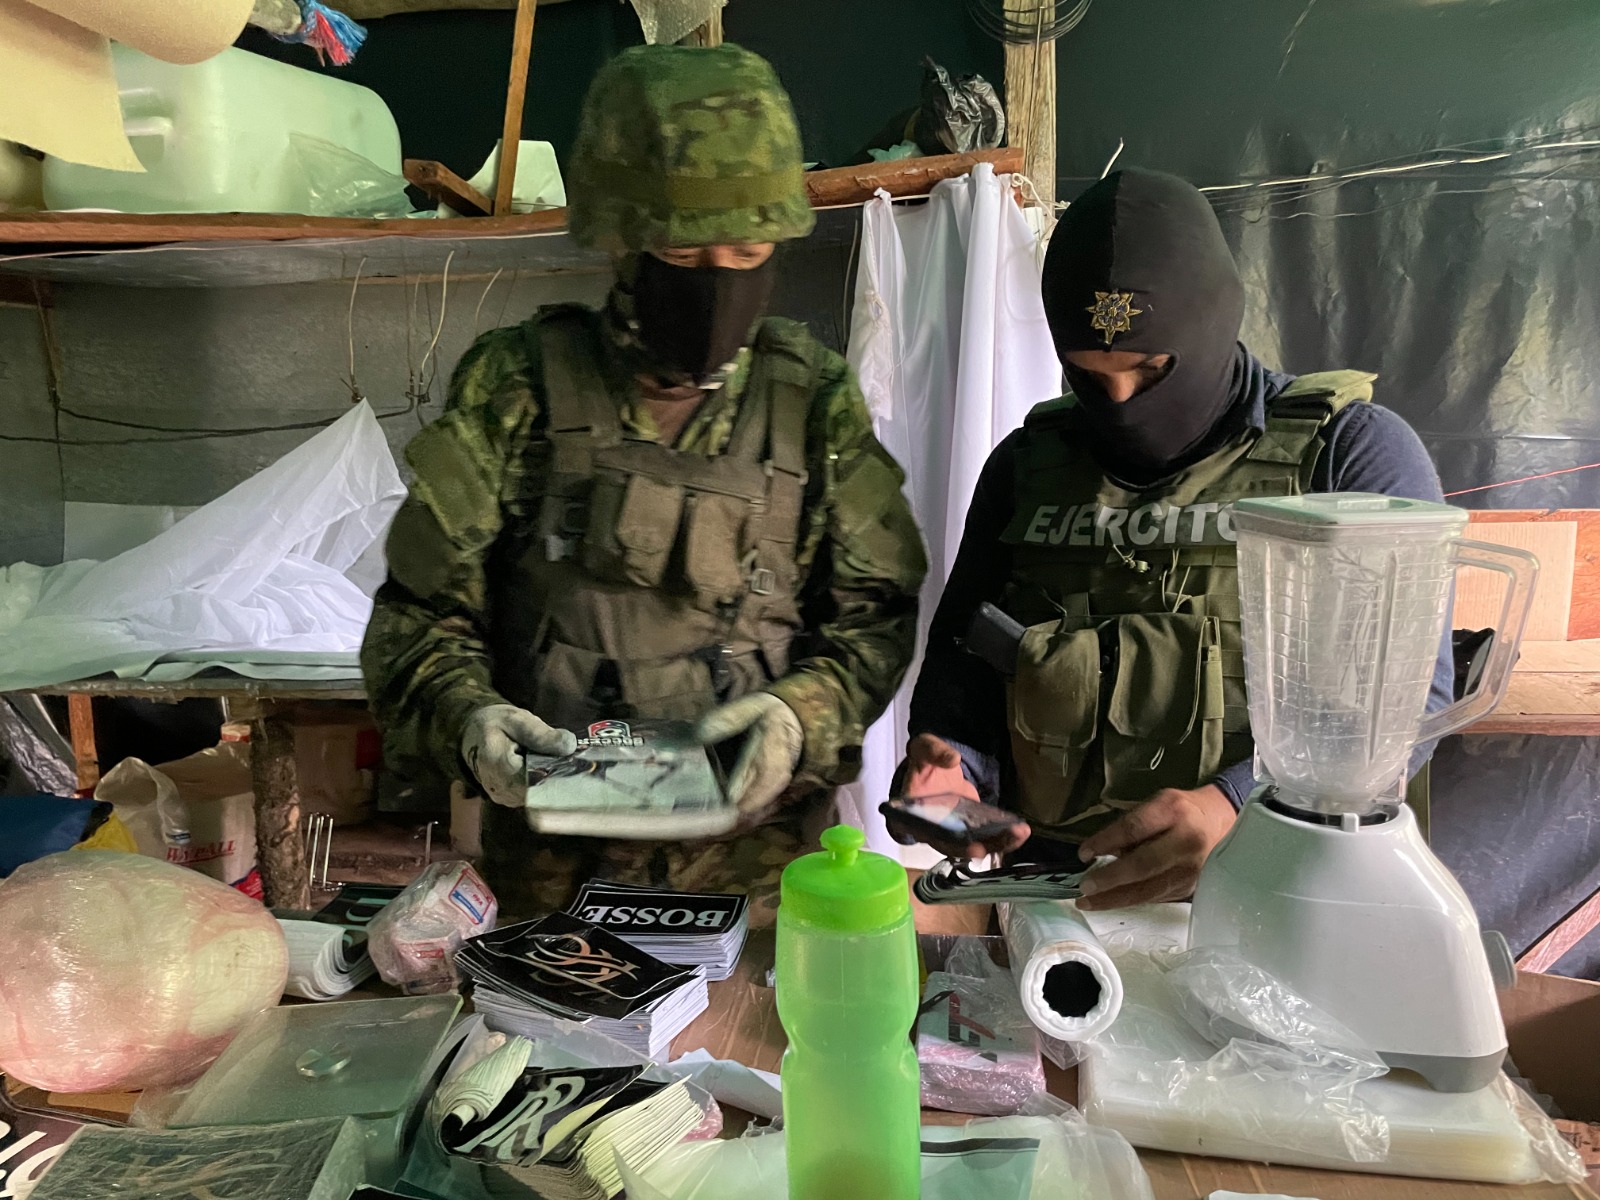 En el campamento donde funcionaba el laboratorio se levantaron indicios para las investigaciones pertinentes. (Fuerzas Armadas de Ecuador)